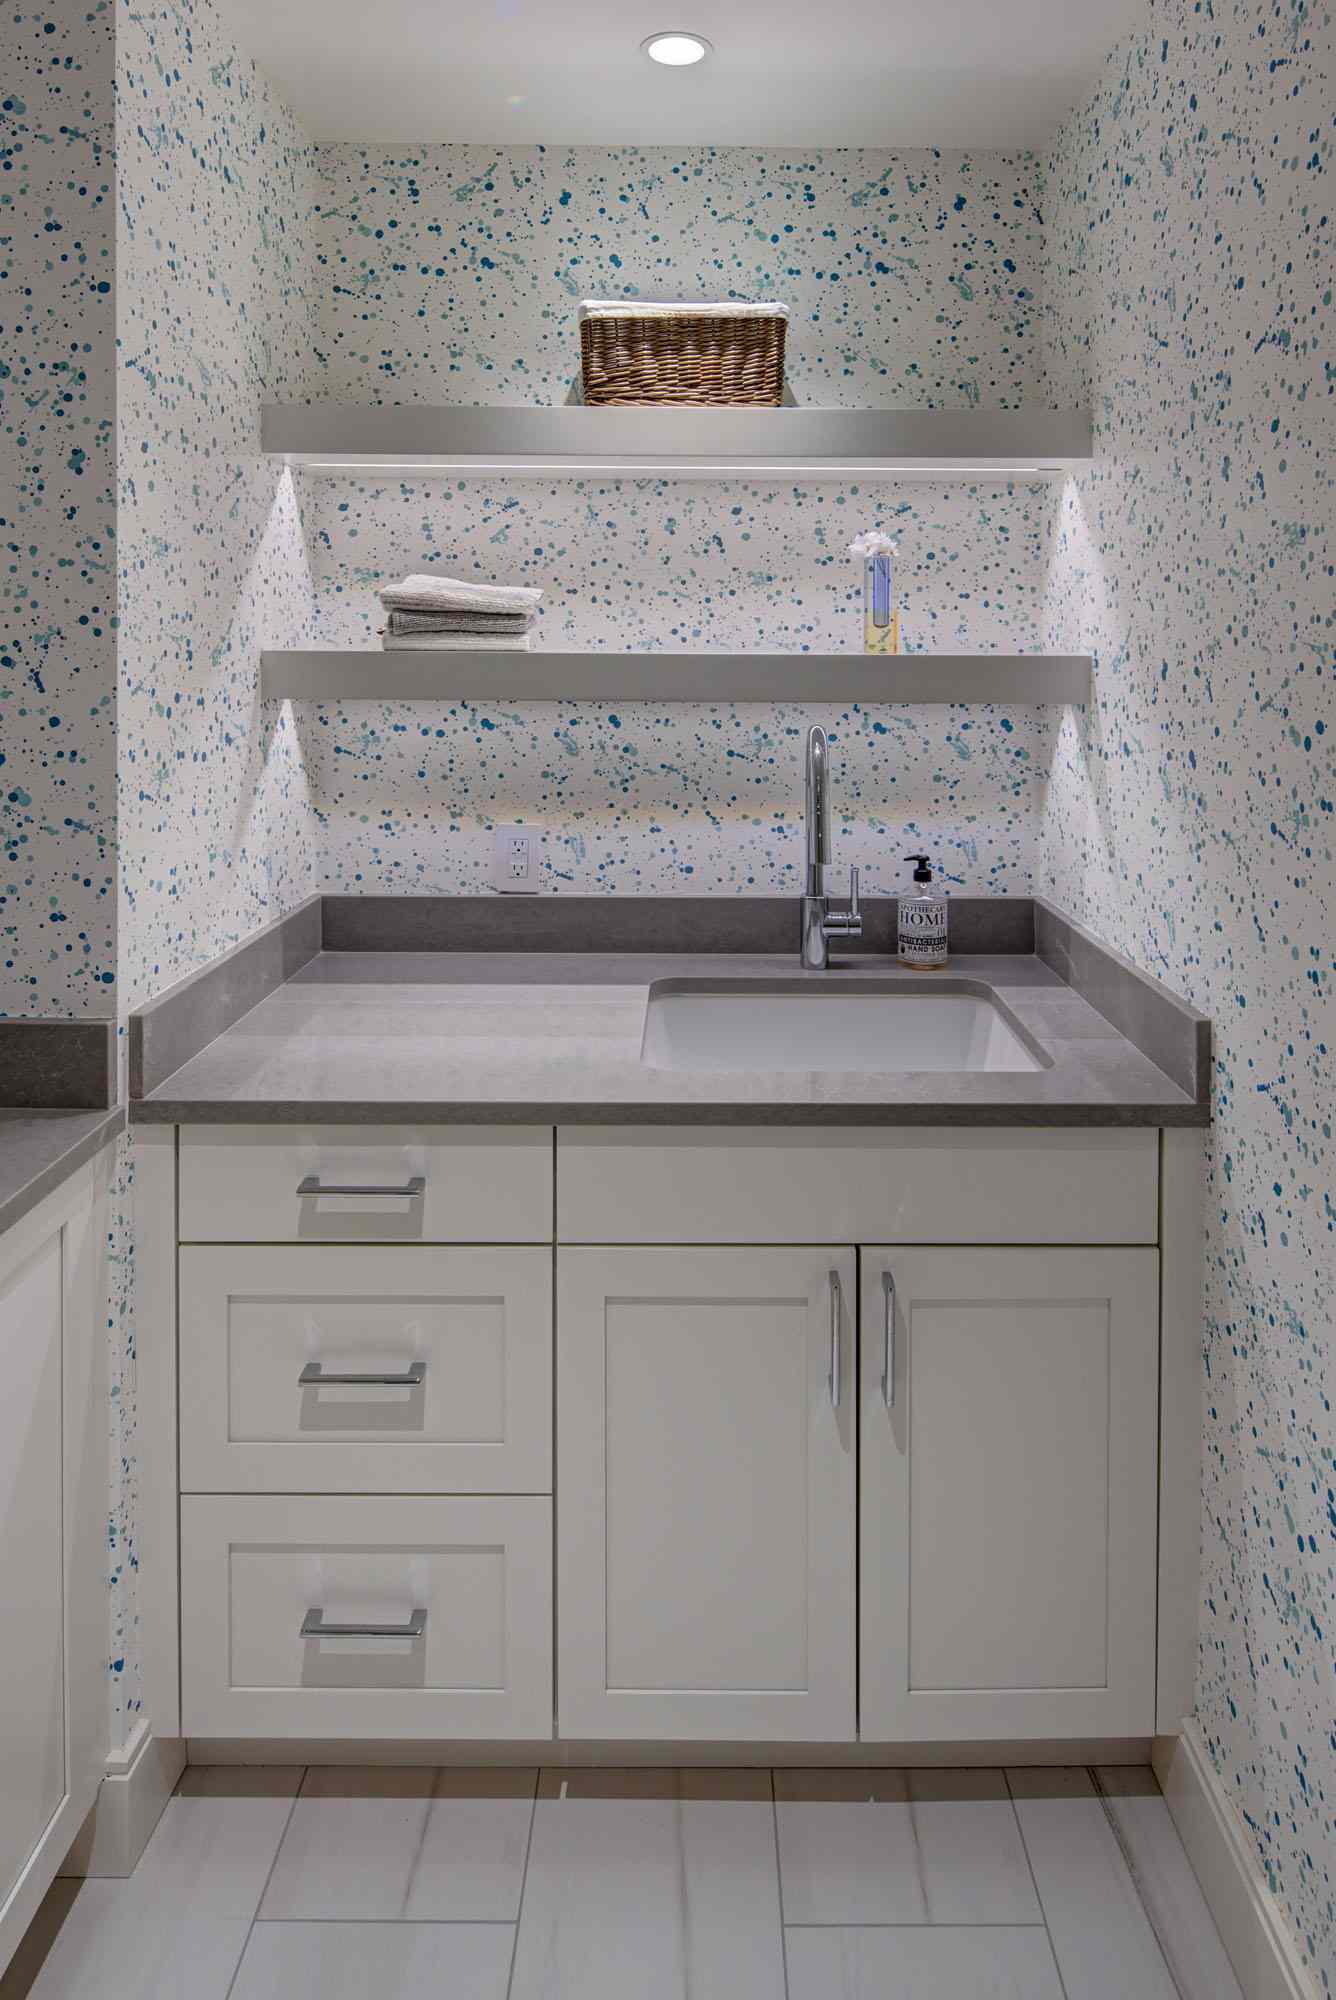 Tapete im Stil von Farbspritzern in einer Waschküche mit weißen Schränken und schwebenden Regalen